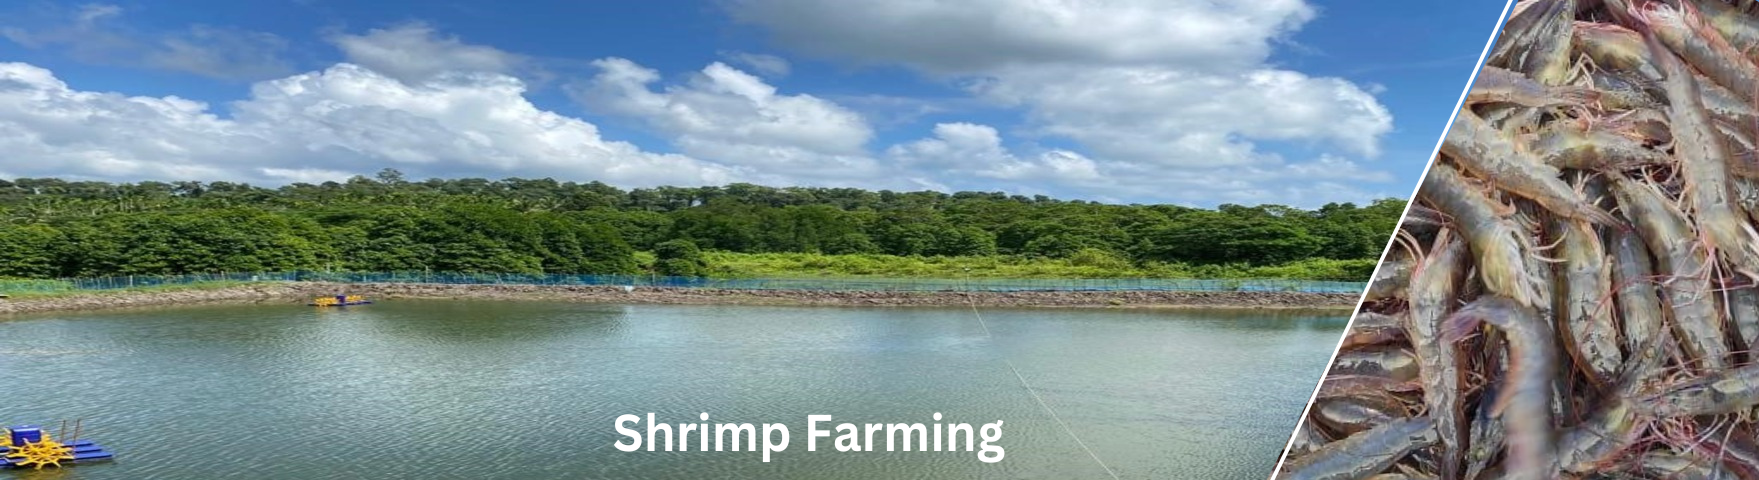 shrimp_farming